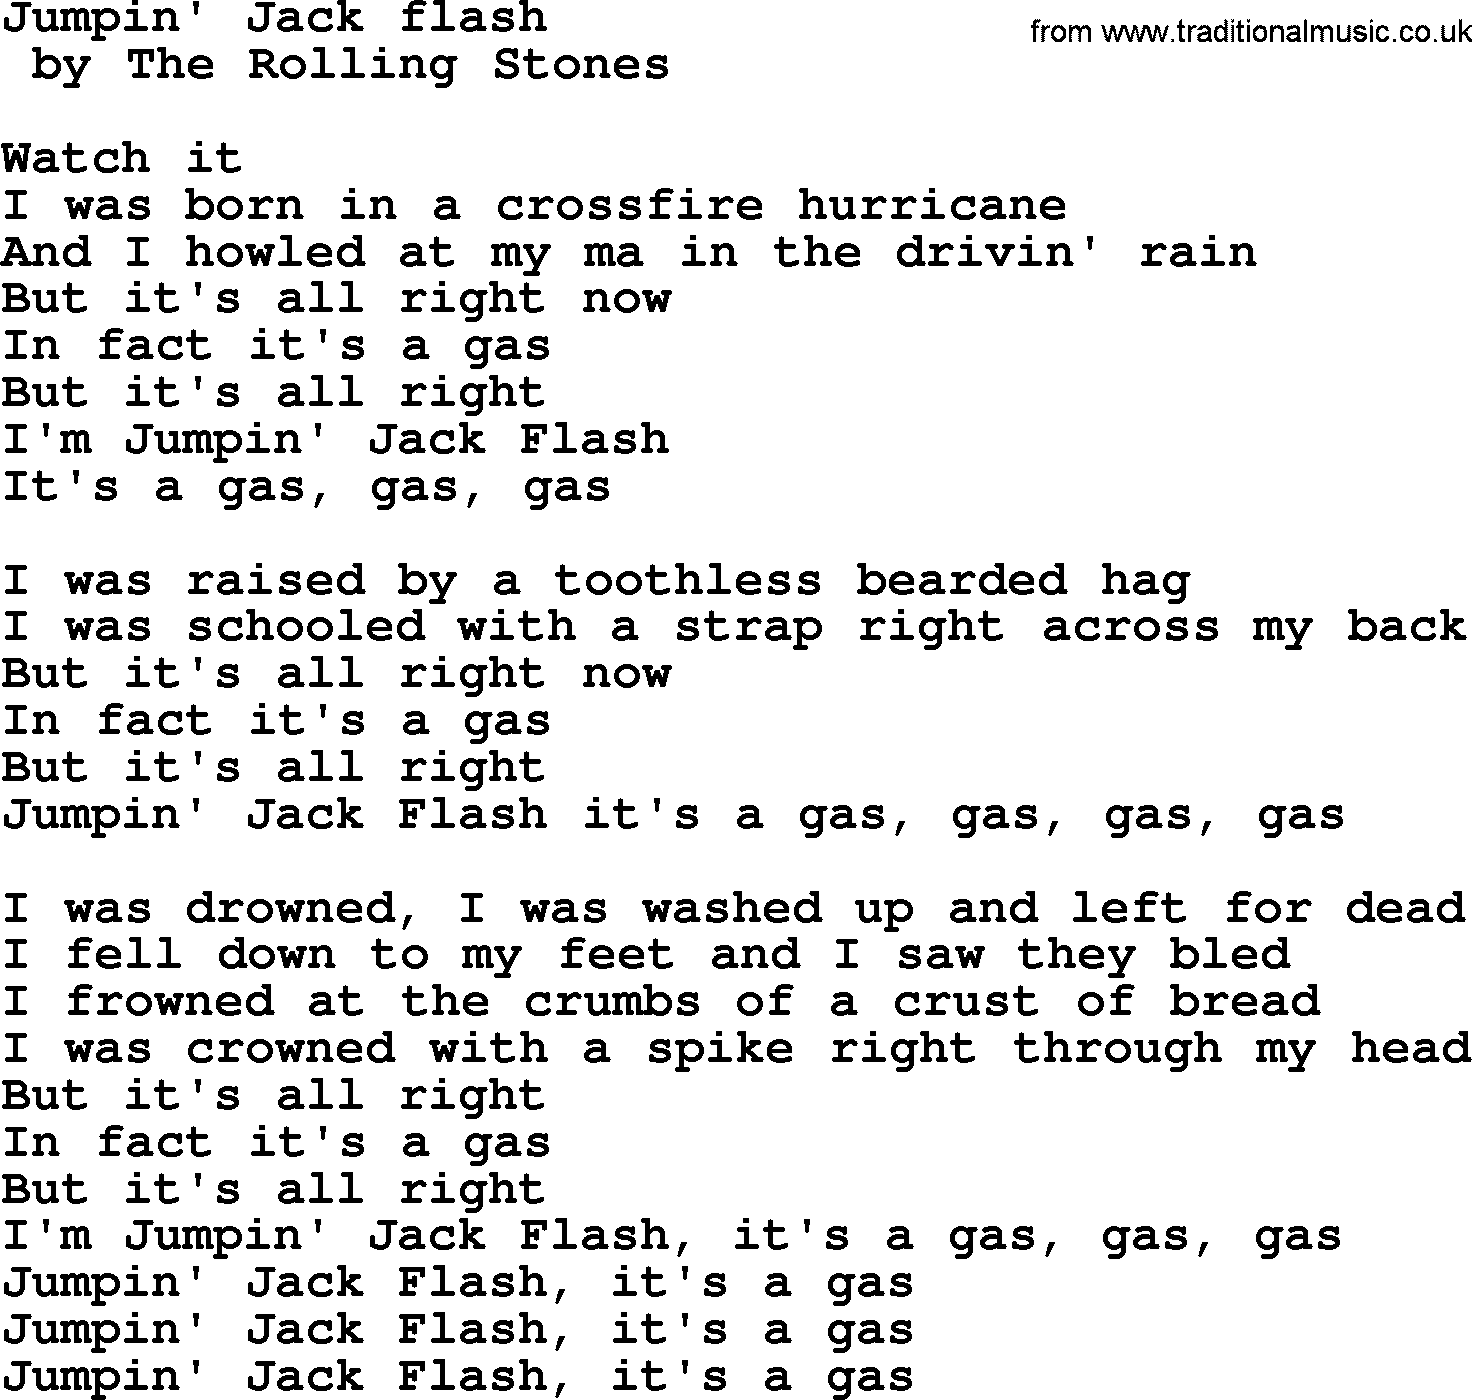 Bruce Springsteen song: Jumpin' Jack Flash lyrics